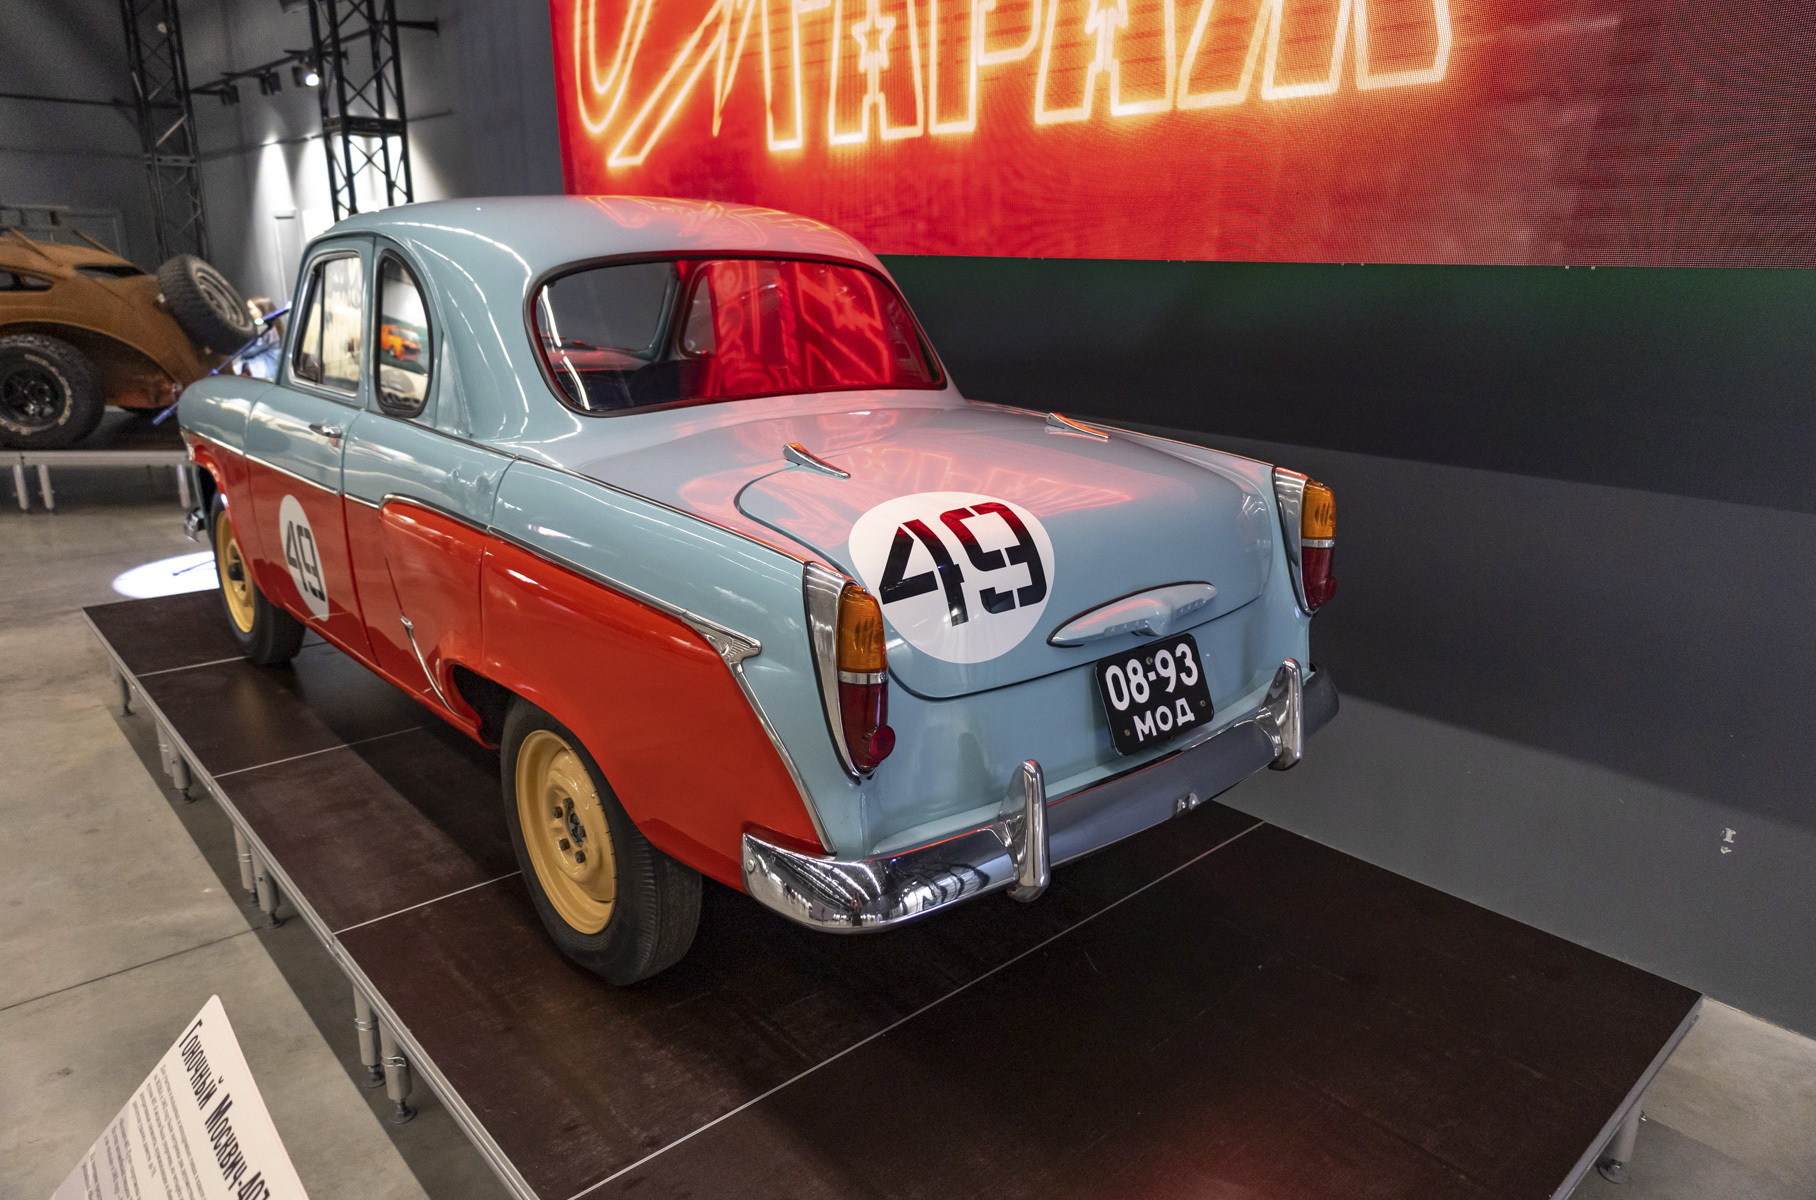 Это спортивный автомобиль, построенный на Московском заводе малолитражных автомобилей (МЗМА) в 1962 году для участия в кольцевых и ипподромных гонках.